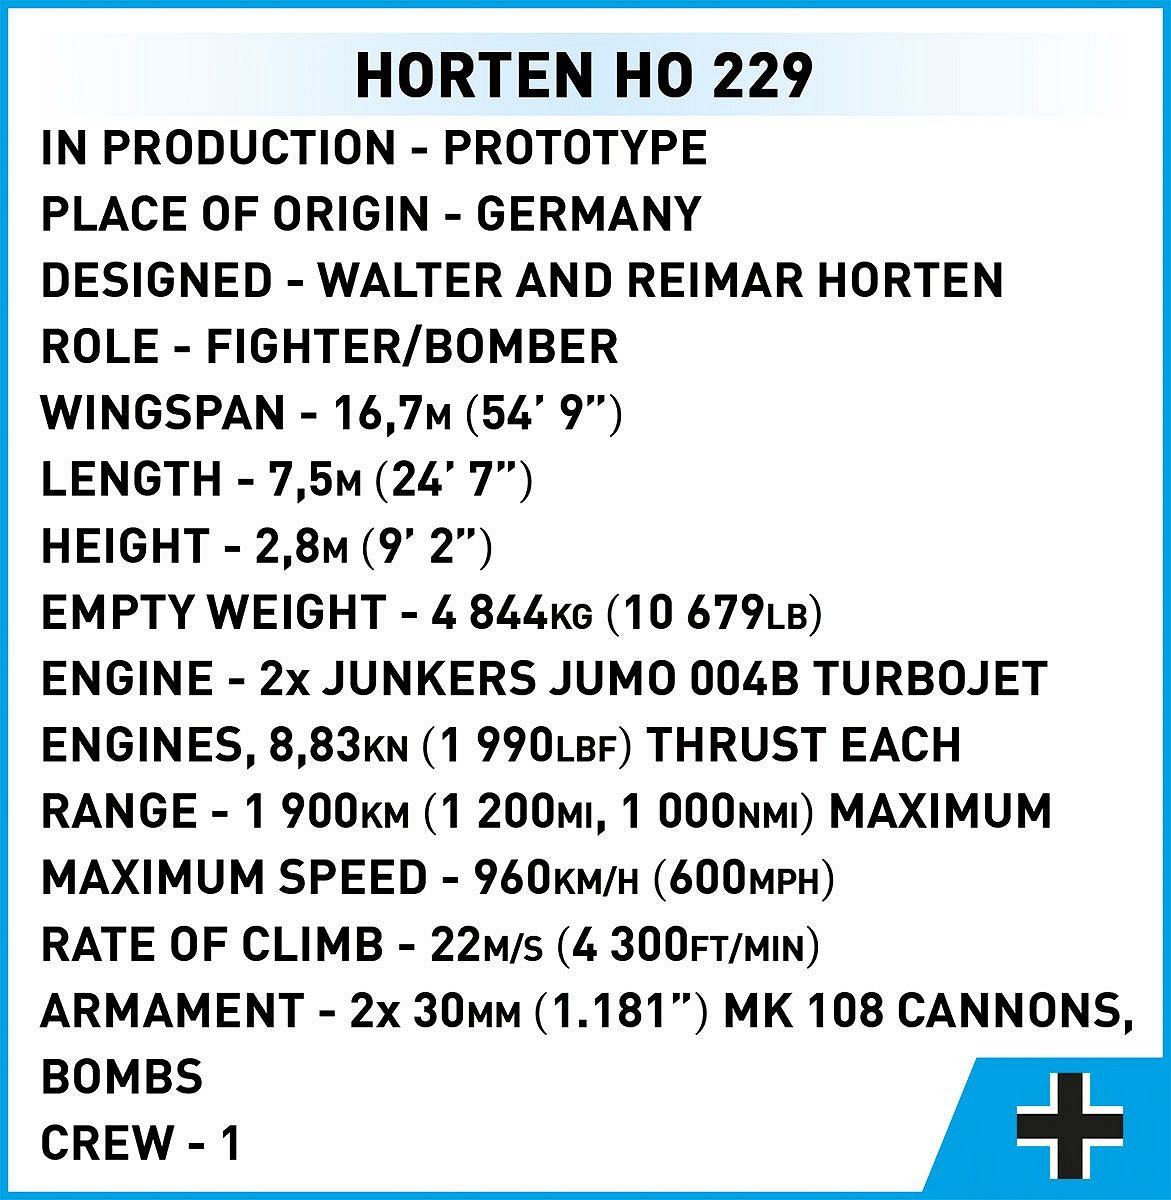 Německý proudový stíhací letoun samokřídlo Horten Ho 229 COBI 5757 - World War II 1:32